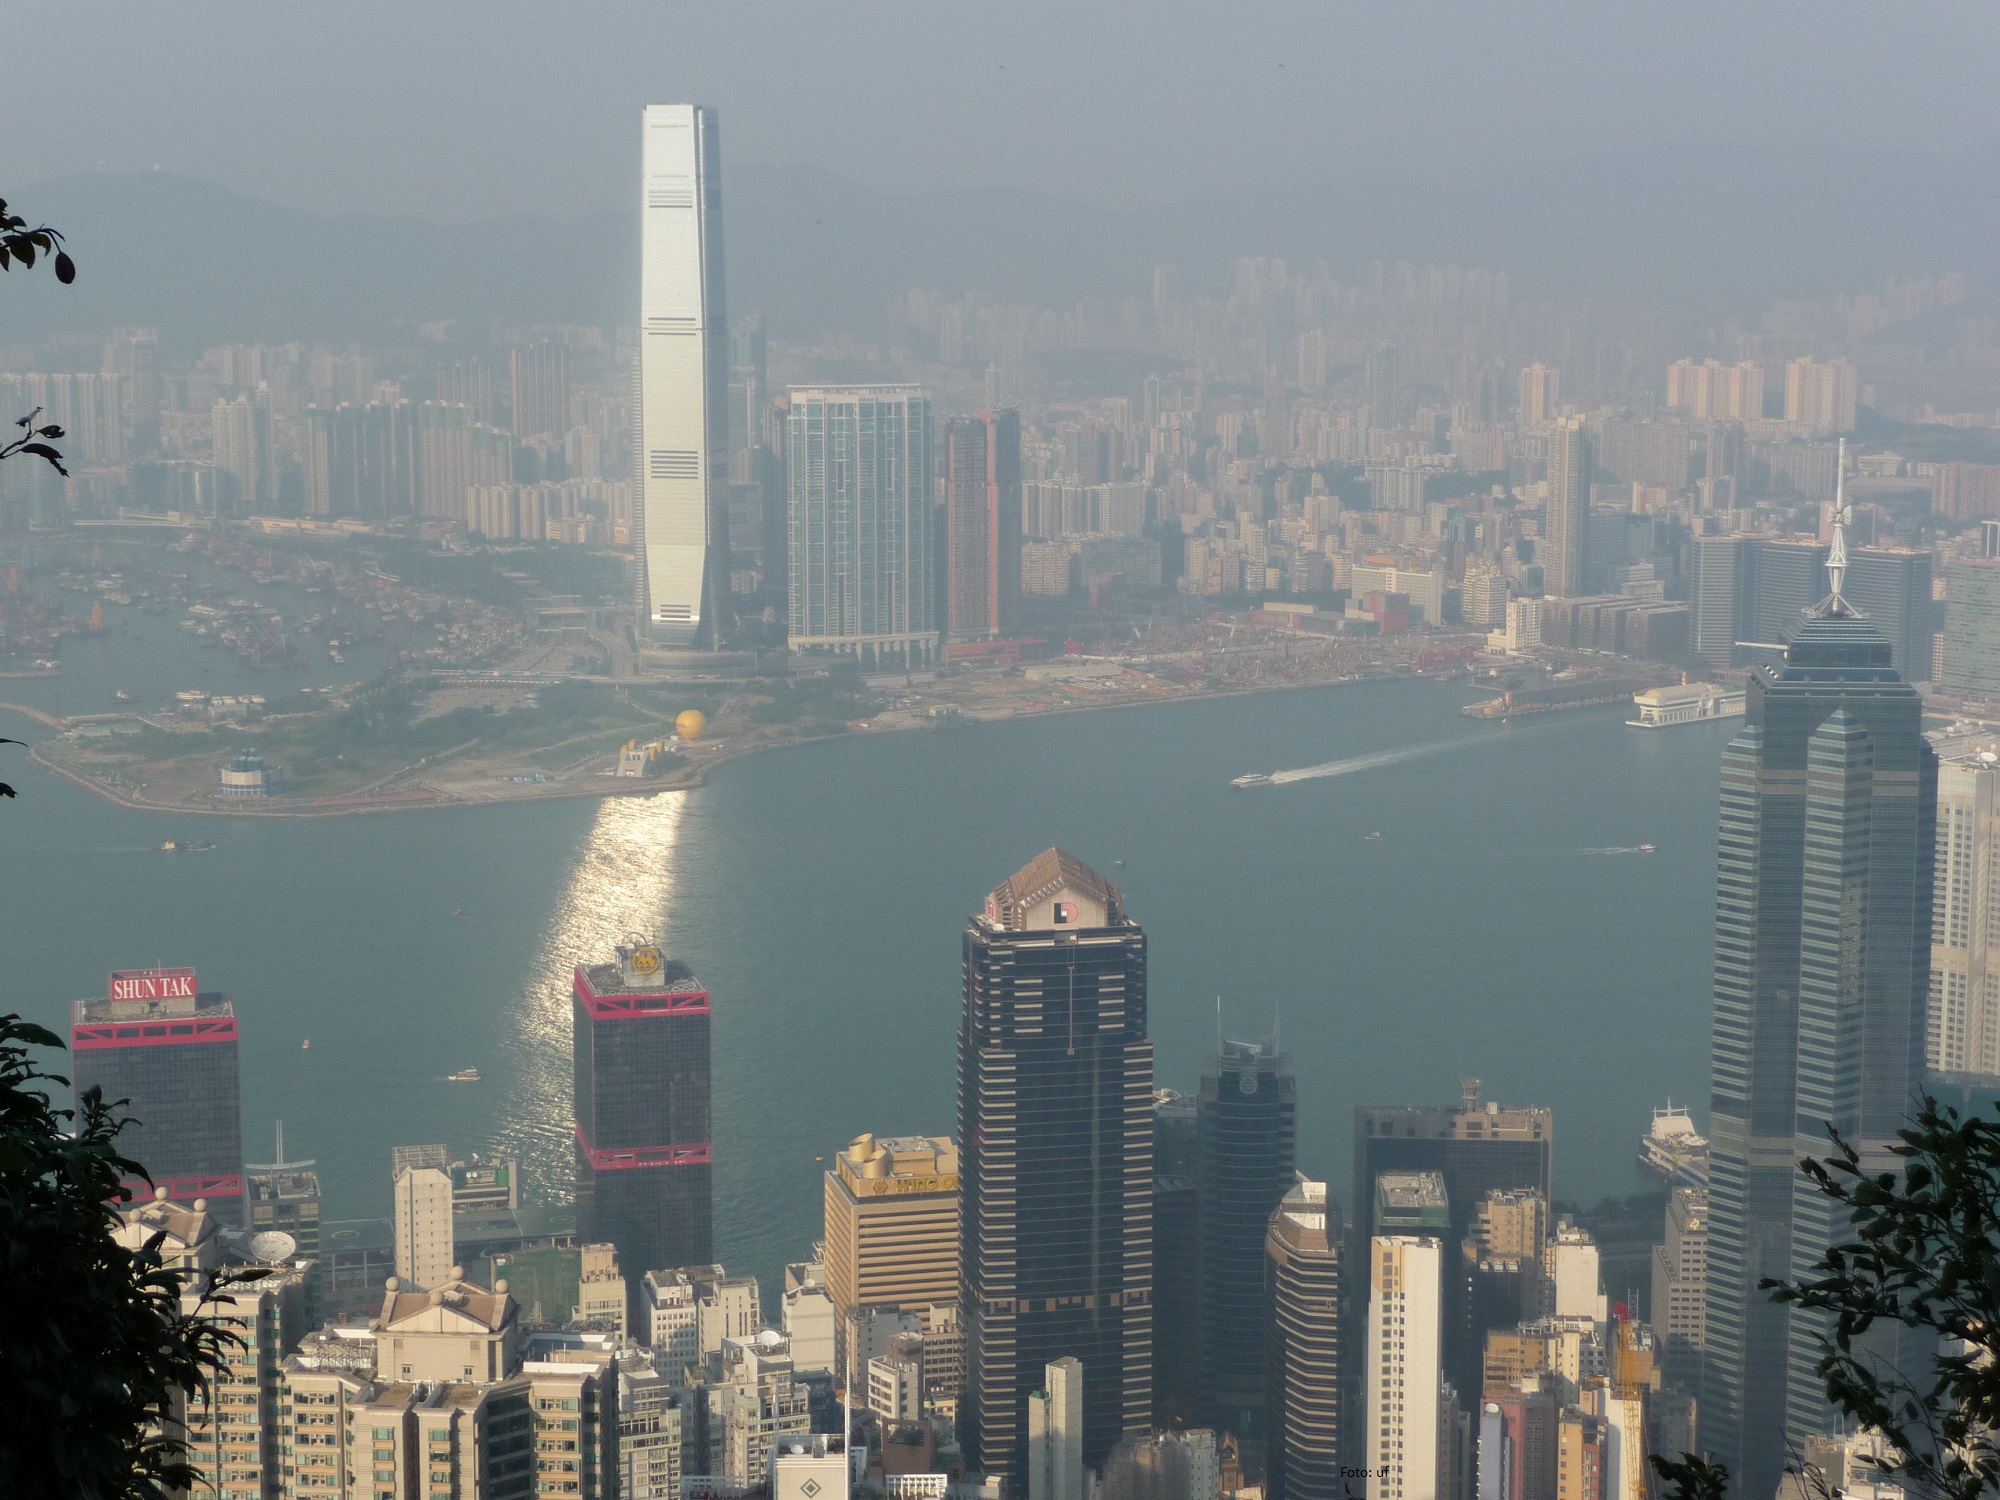 Gut vom Sonnenlicht reflektiert: das International Commerce Center - höchstes Gebäude von Hongkong (484 m, 118 Etagen)